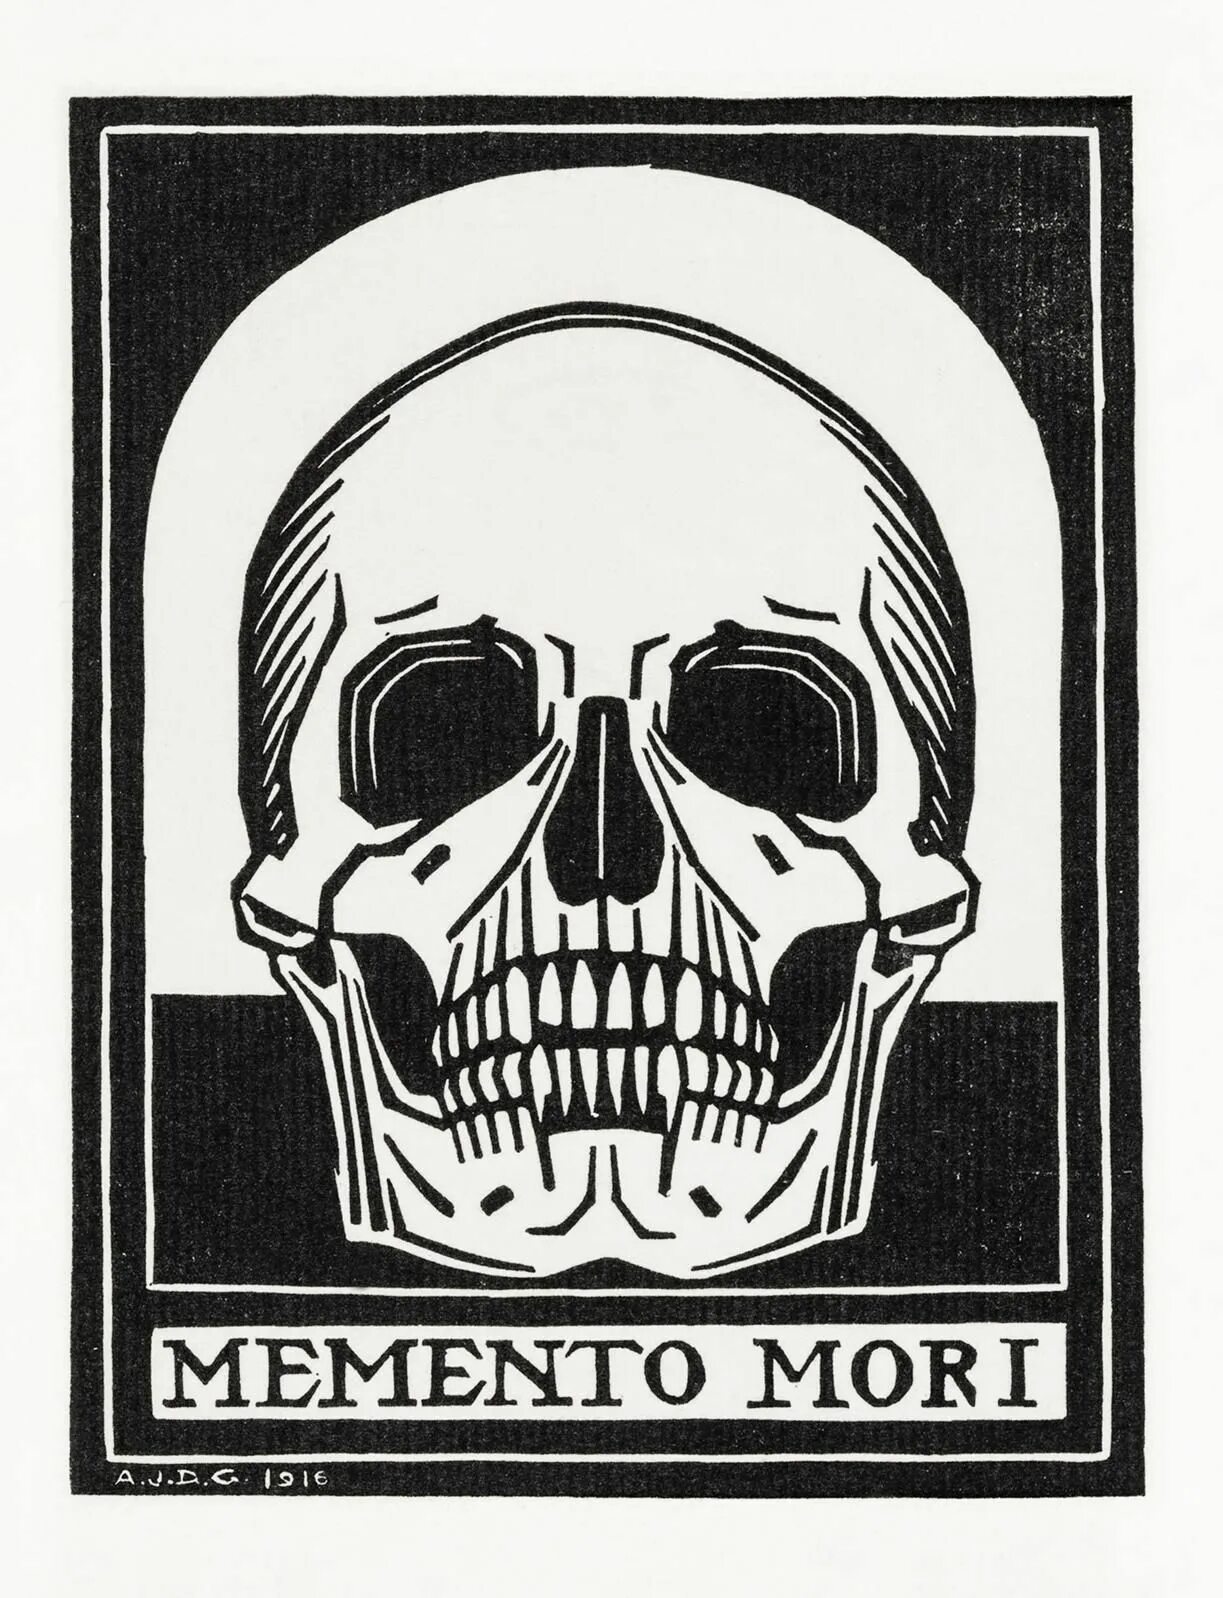 Картина "Memento Mori " Раттенберг. Memento Mori картина. Memento Mori плакат. Моменто море картинки